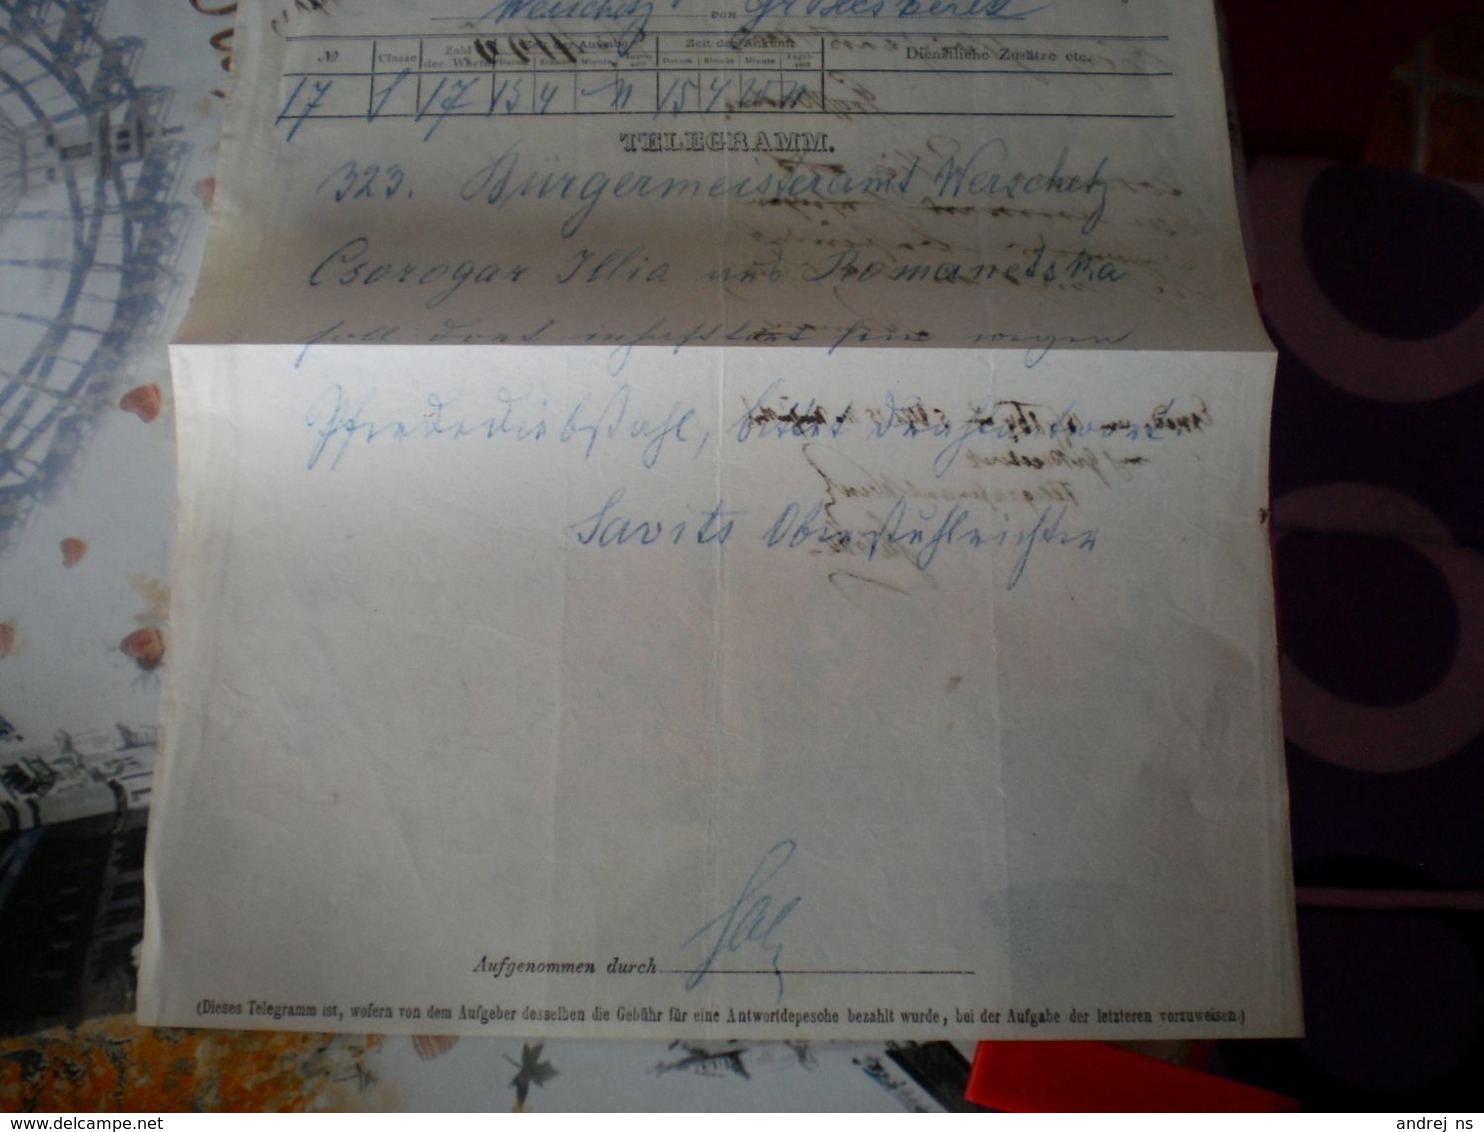 Telegramm Deutsch Oesterreichischer Telegraphen Verein Gr Becskerek Zrenjanin To Wersecz Vrsac 1864 Banat - Telegrafi